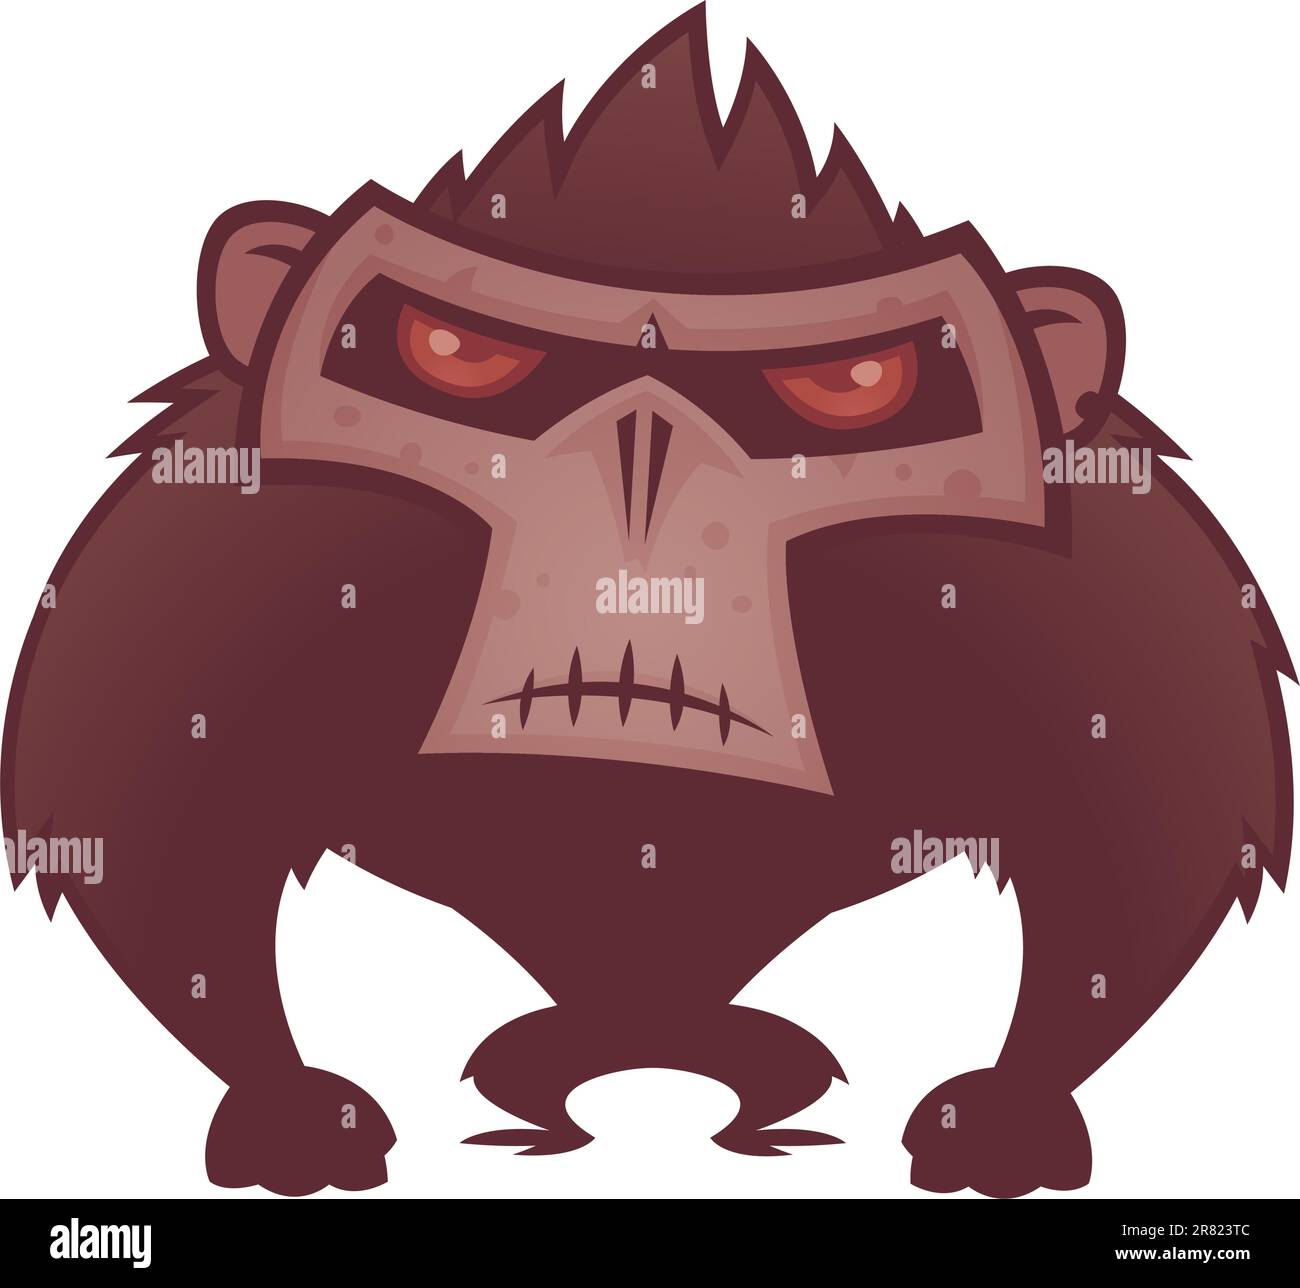 Vektor-Cartoon-Illustration eines wütenden Affen mit roten Augen. Stock Vektor